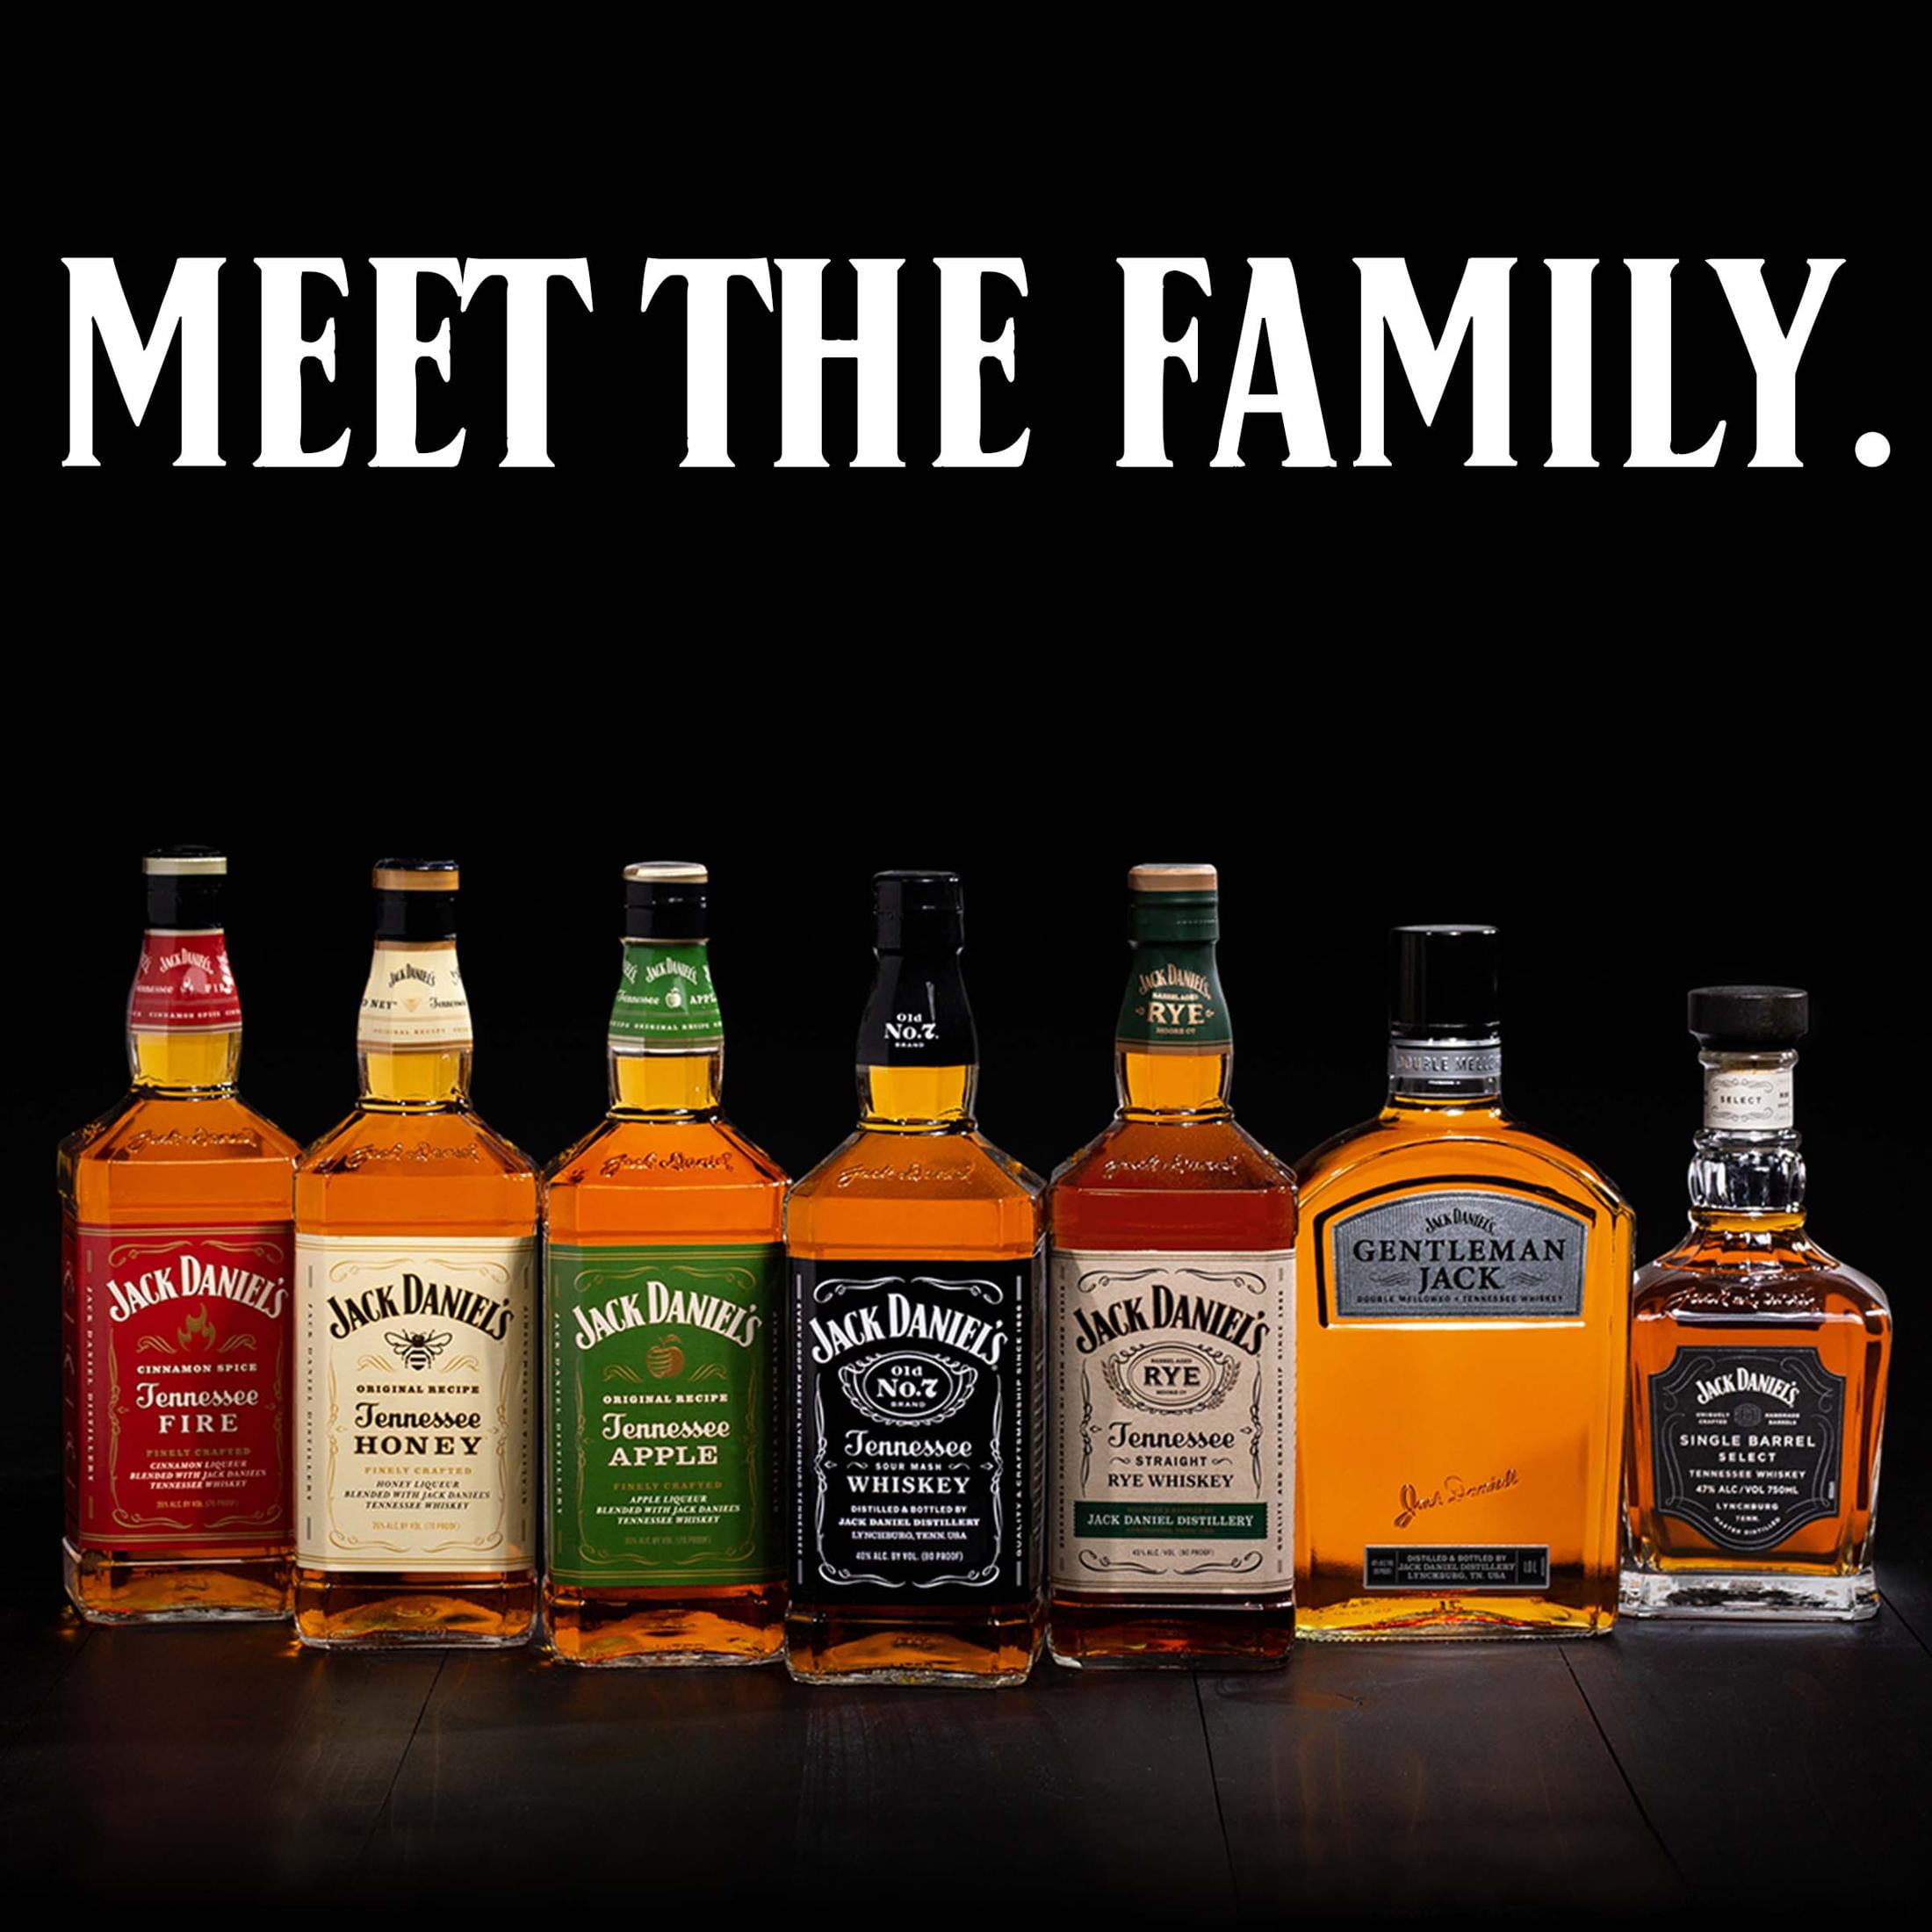 Jack Daniel's Tennessee Honey Whiskey – Buy Liquor Online